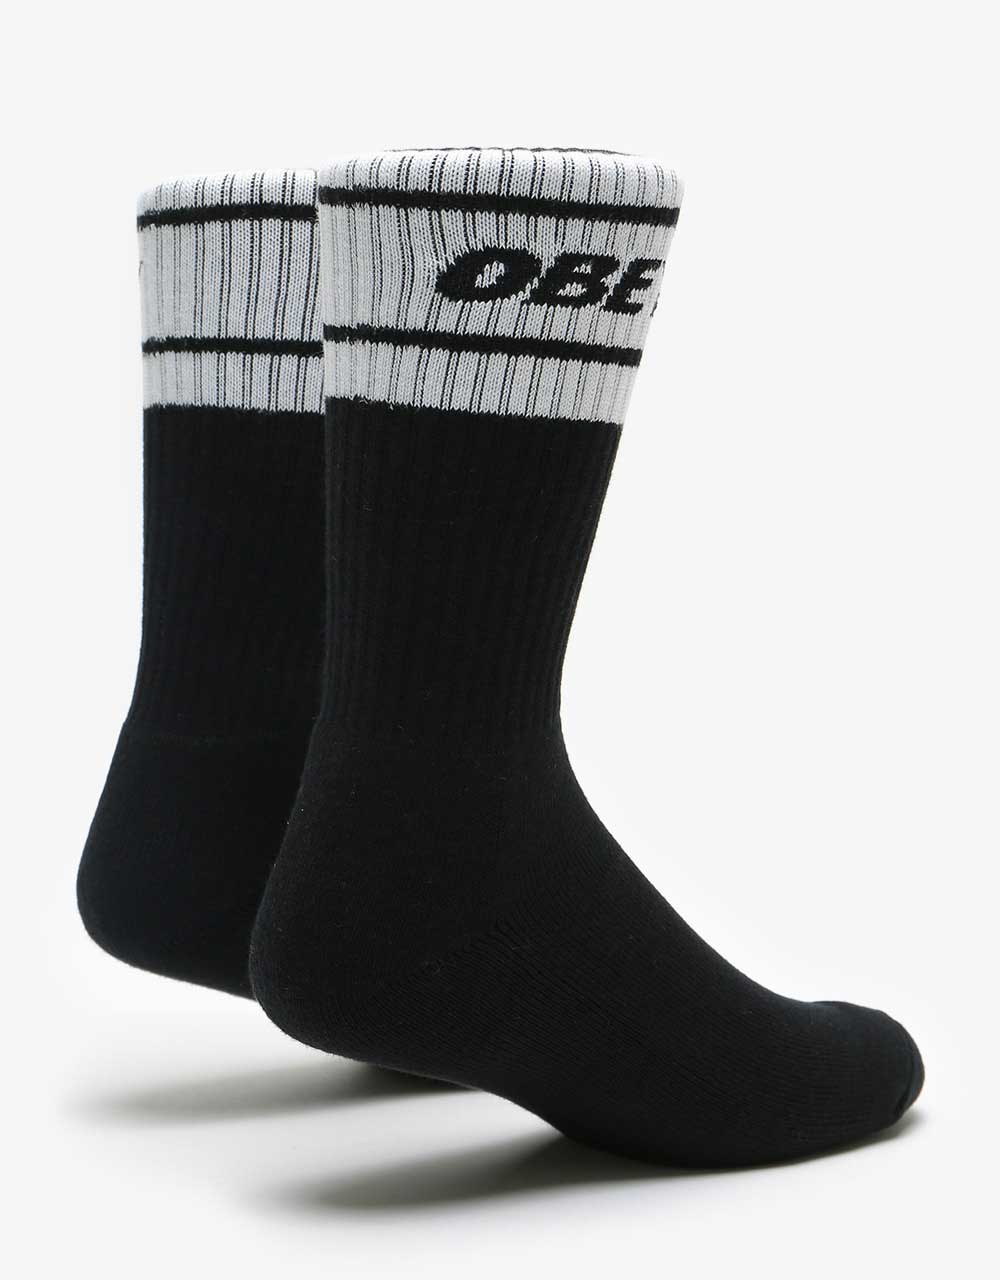 Obey Cooper II Socks - Black/White